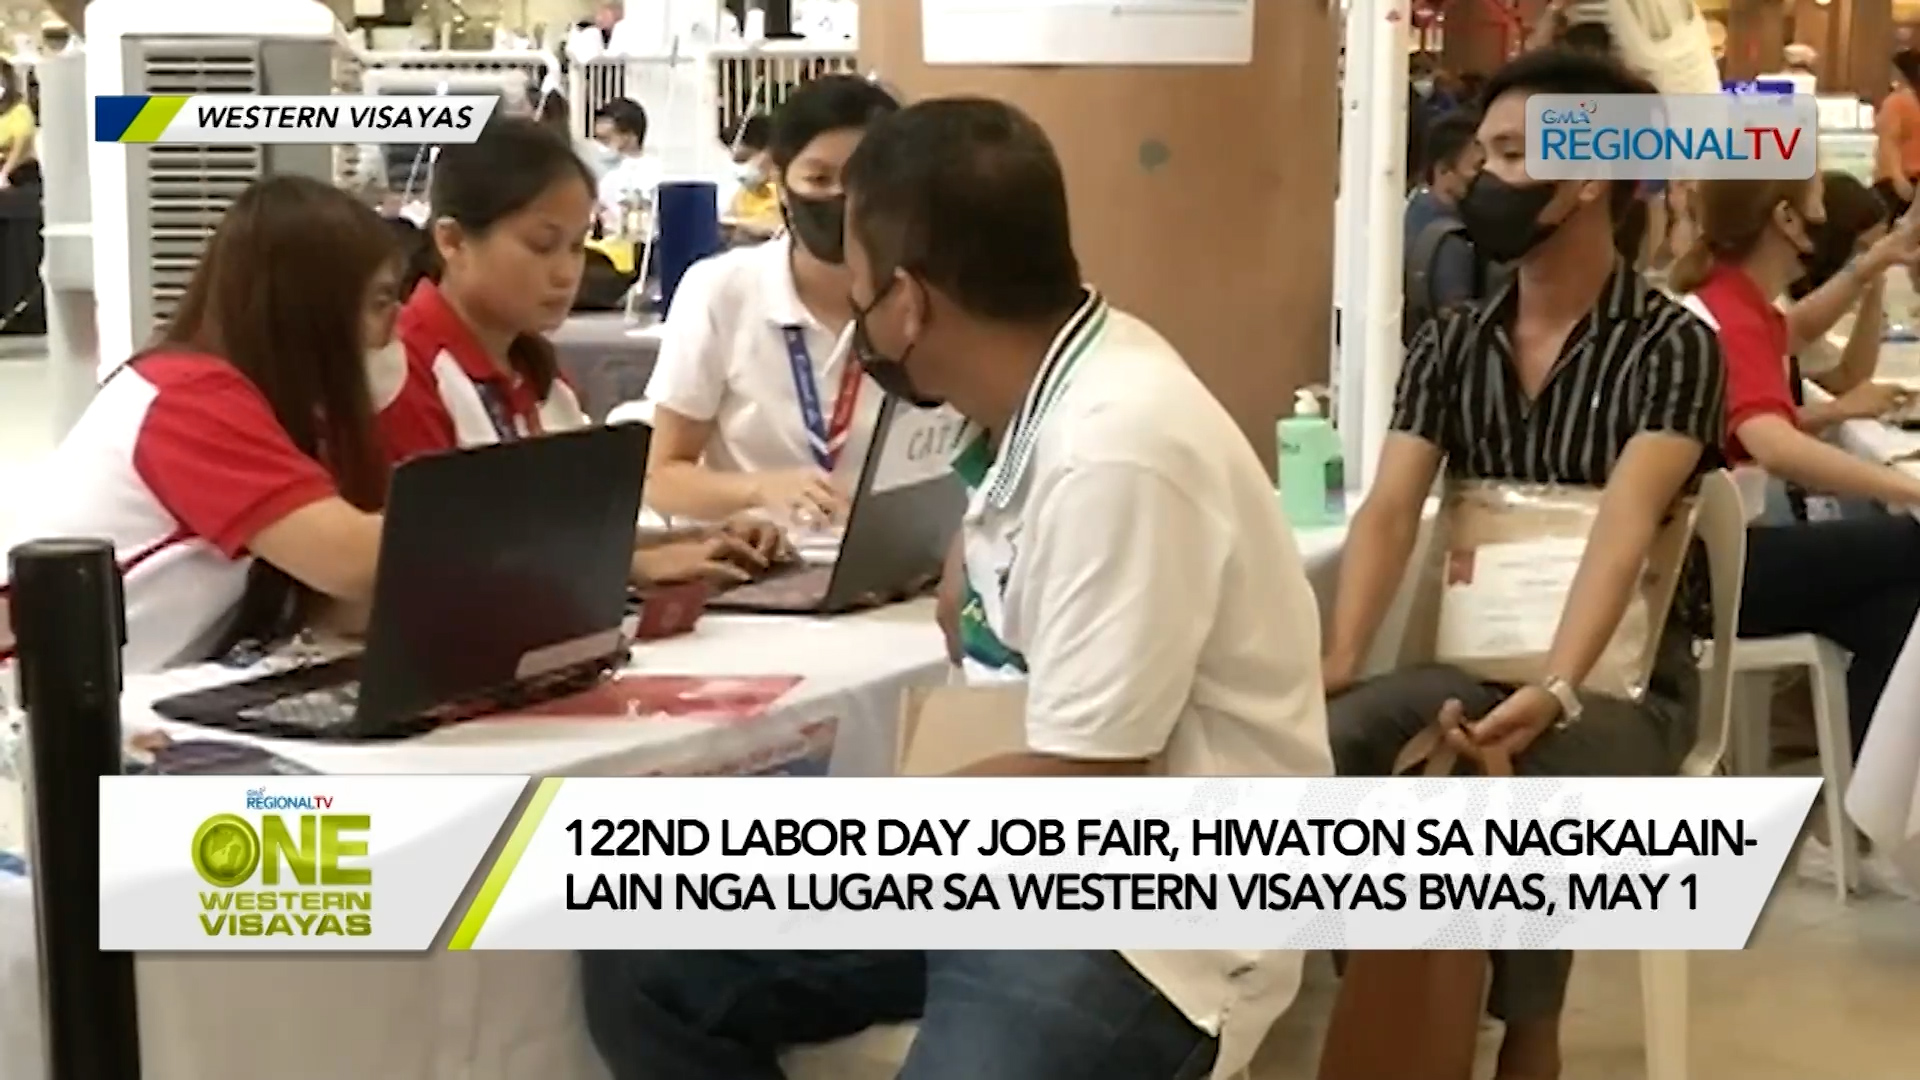 Labor Day Job fair, hiwaton sa nagkalain-lain nga lugar sa Western Visayas